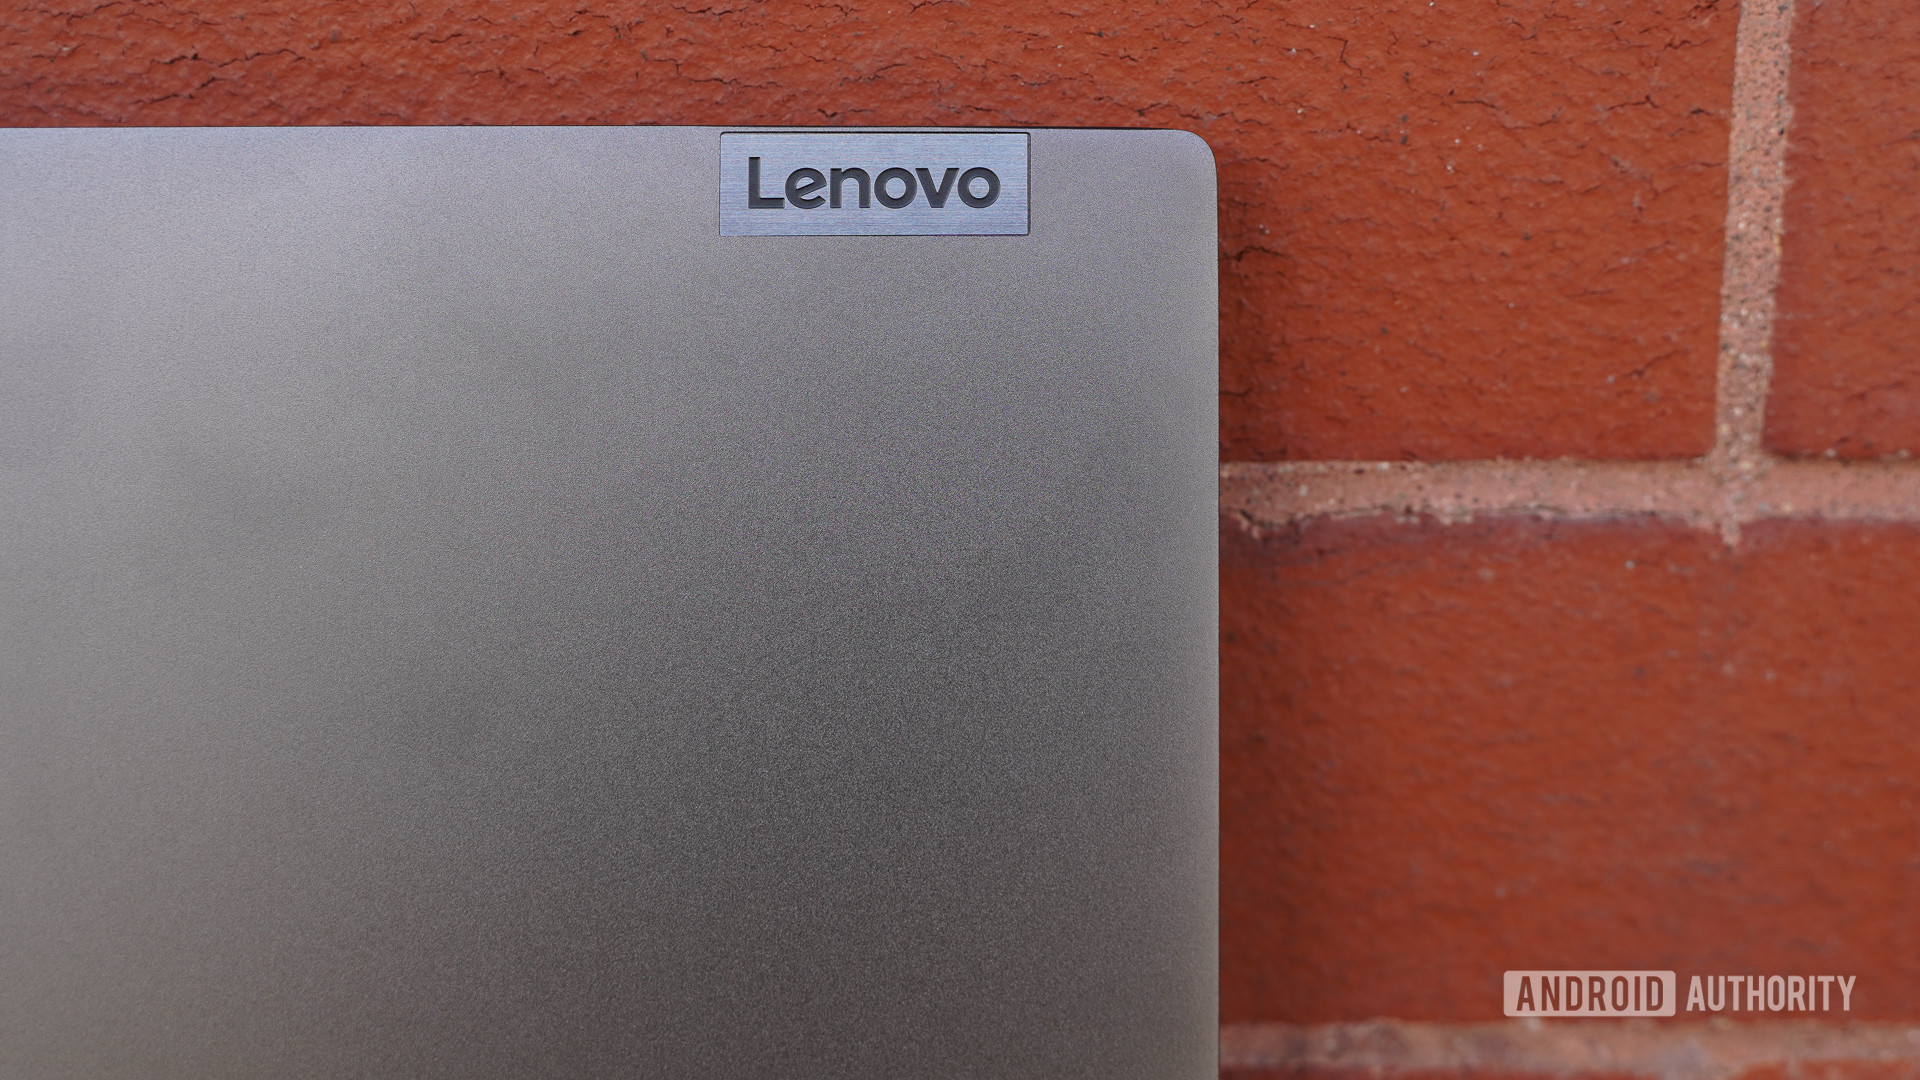 Lenovo Flex 5G branding